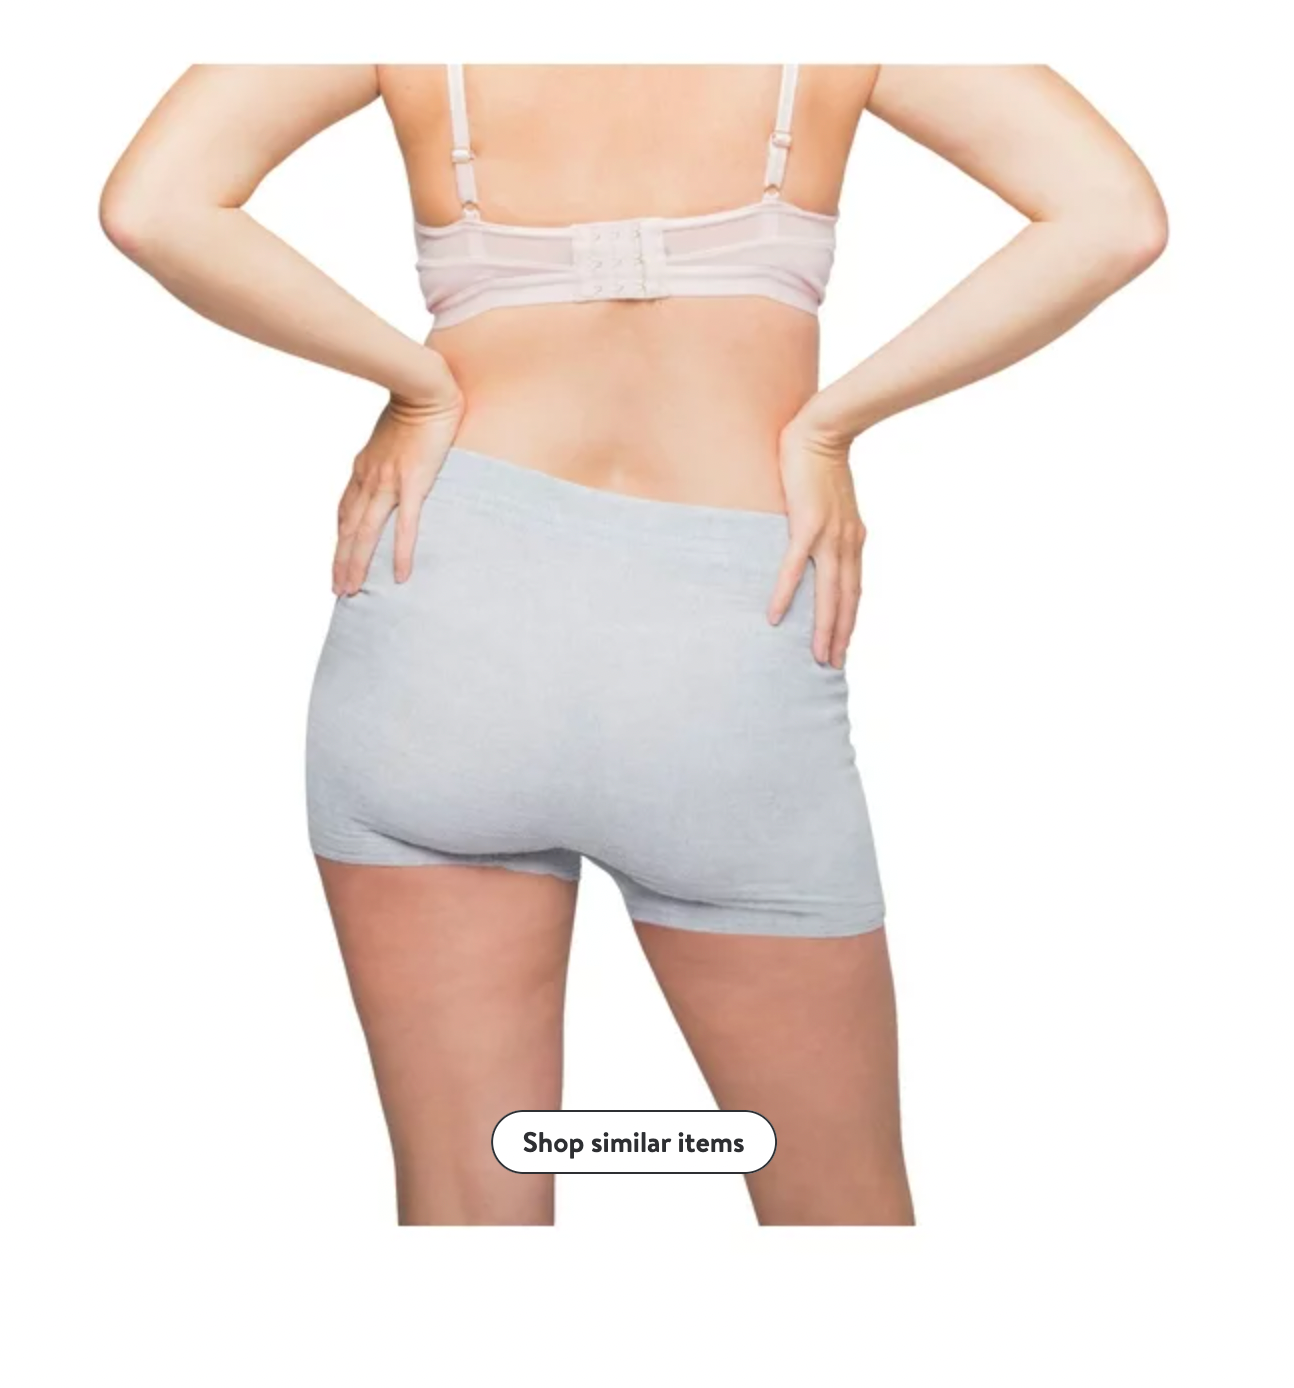 FridaMom Disposable Postpartum Underwear for Women